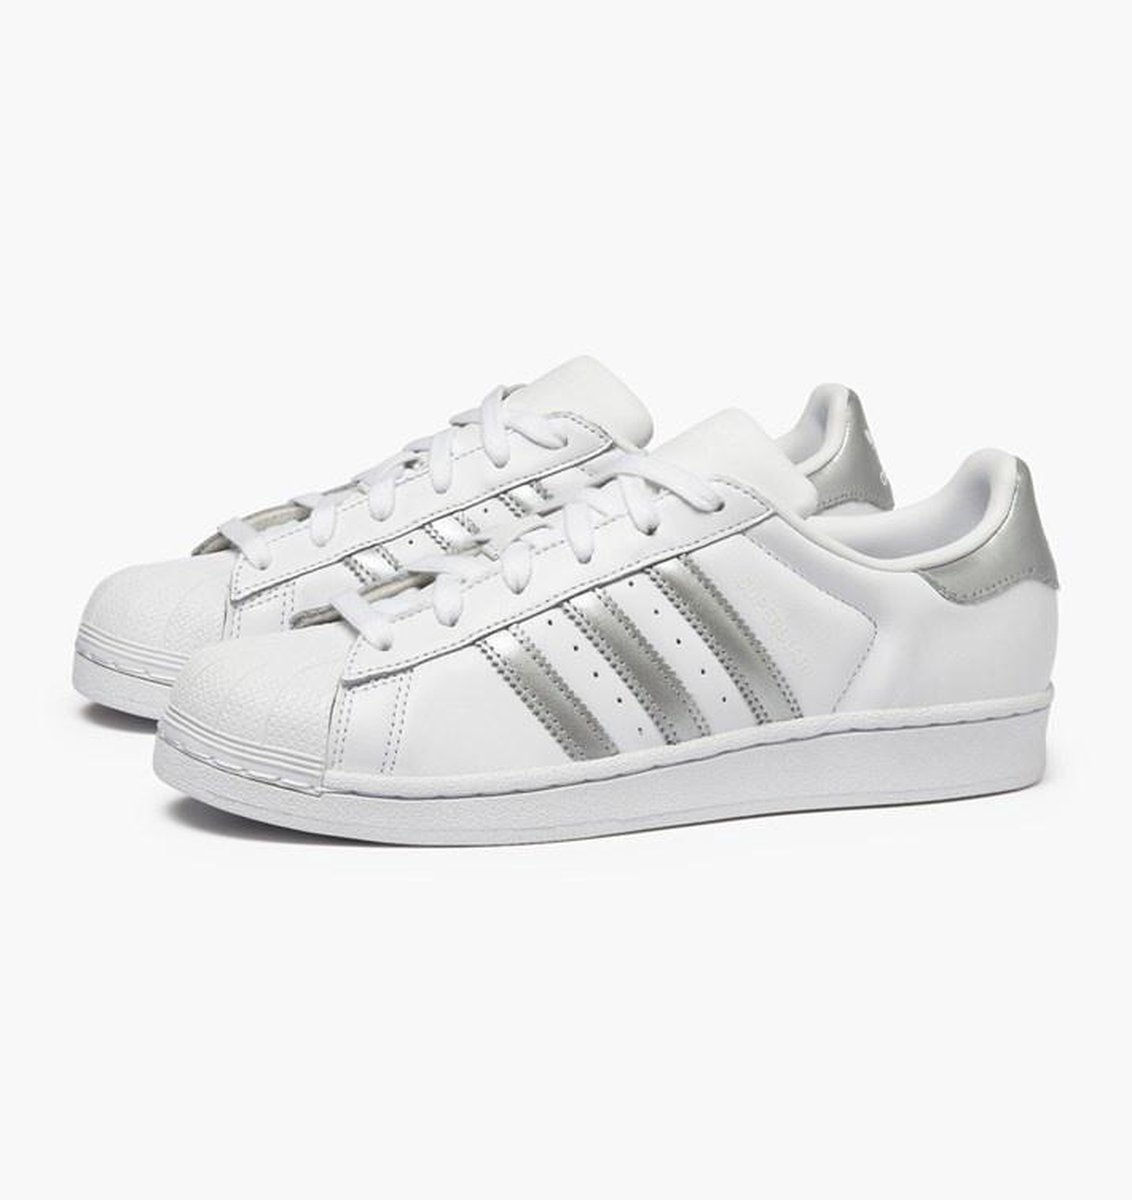 Adidas Superstar Wit / Grijs - Dames Sneaker - D97998 - Maat 38 ...